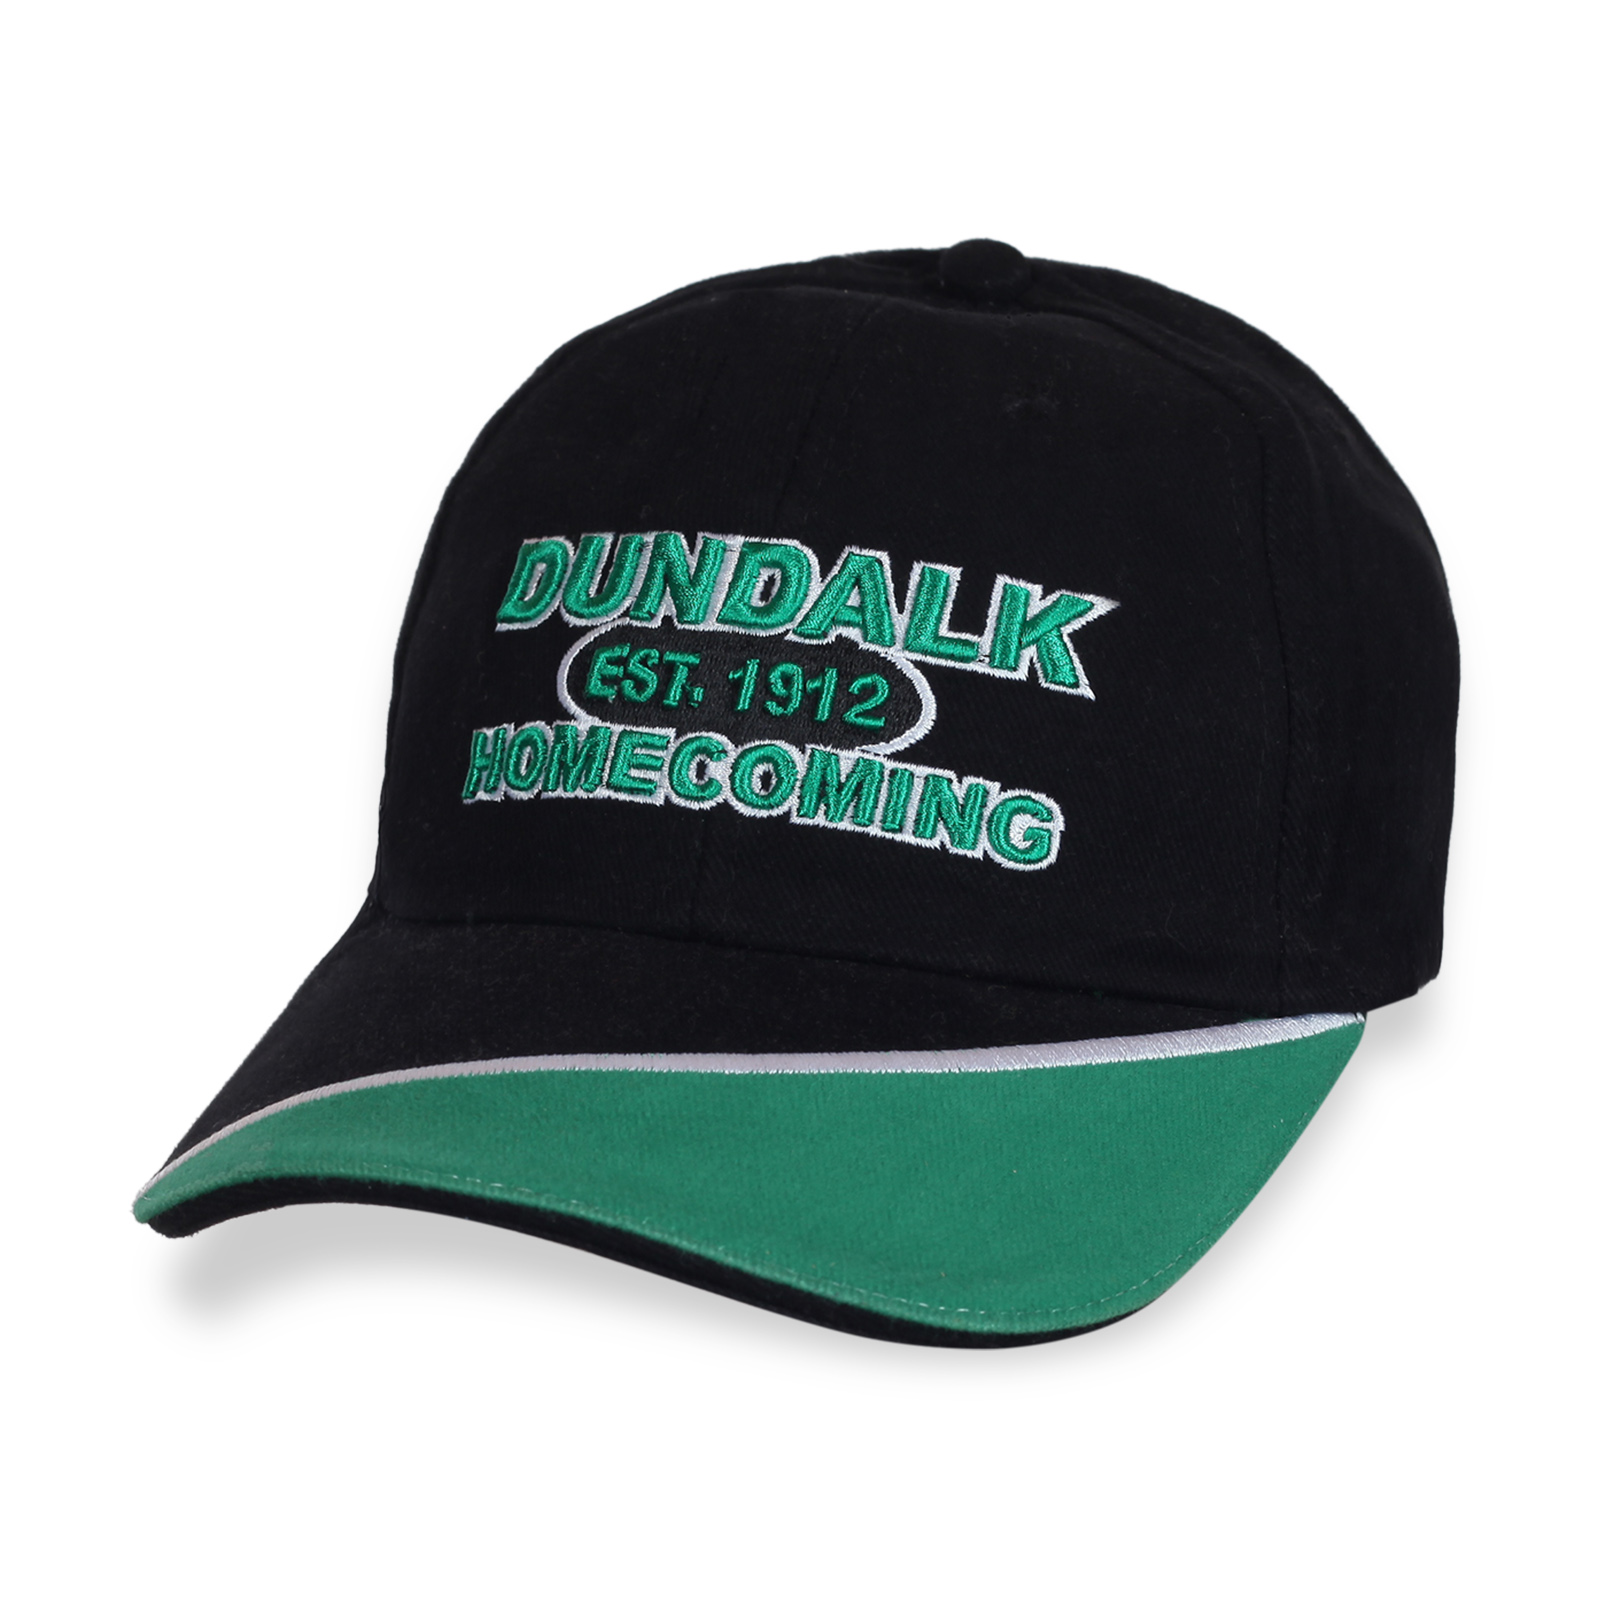  Купить чемпионскую кепку Dundalk по демократической цене